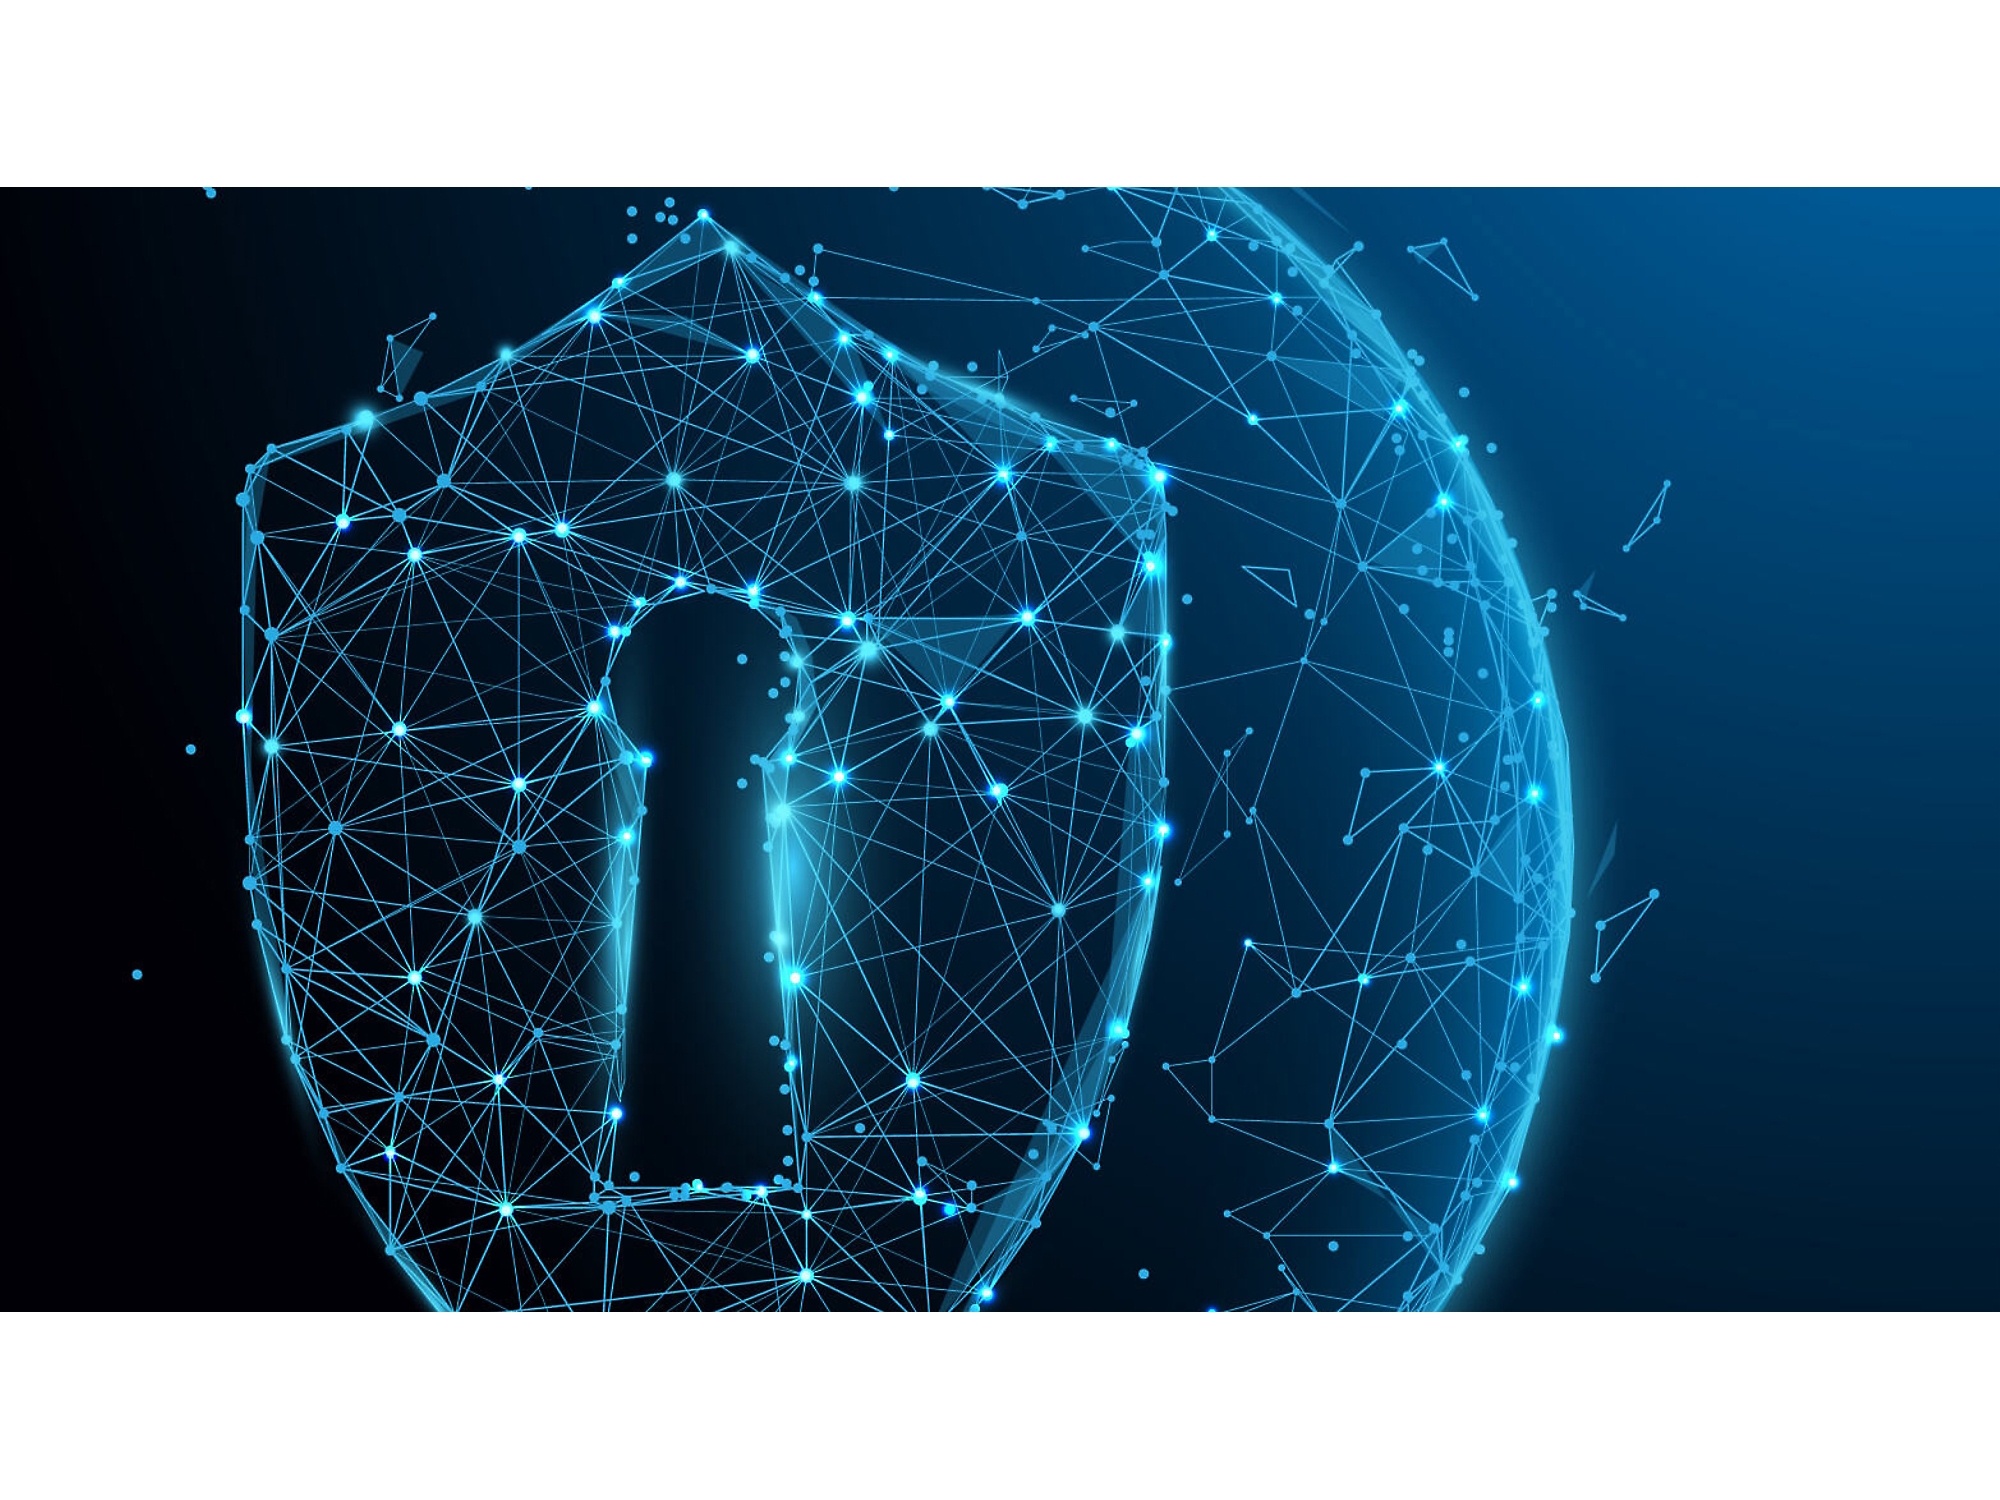 Digitális illusztráció egy izzó kék drótvázas pajzsról egy kulcslyukkal, amely a kiberbiztonságot szimbolizálja